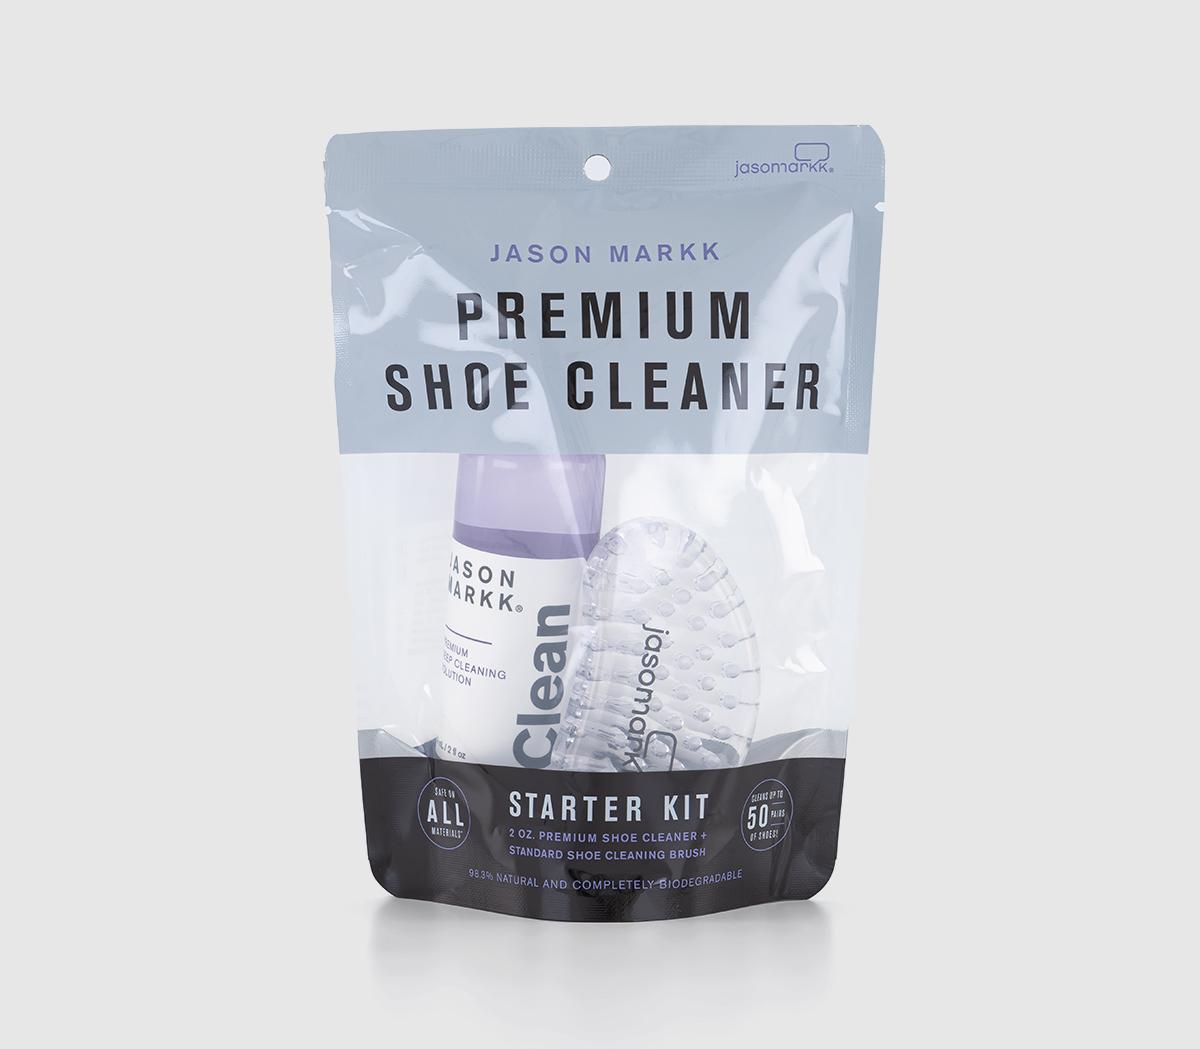 JASON MARKKPremium Shoe Cleaning Product Set2 Oz Premium Shoe Cleaning Kit